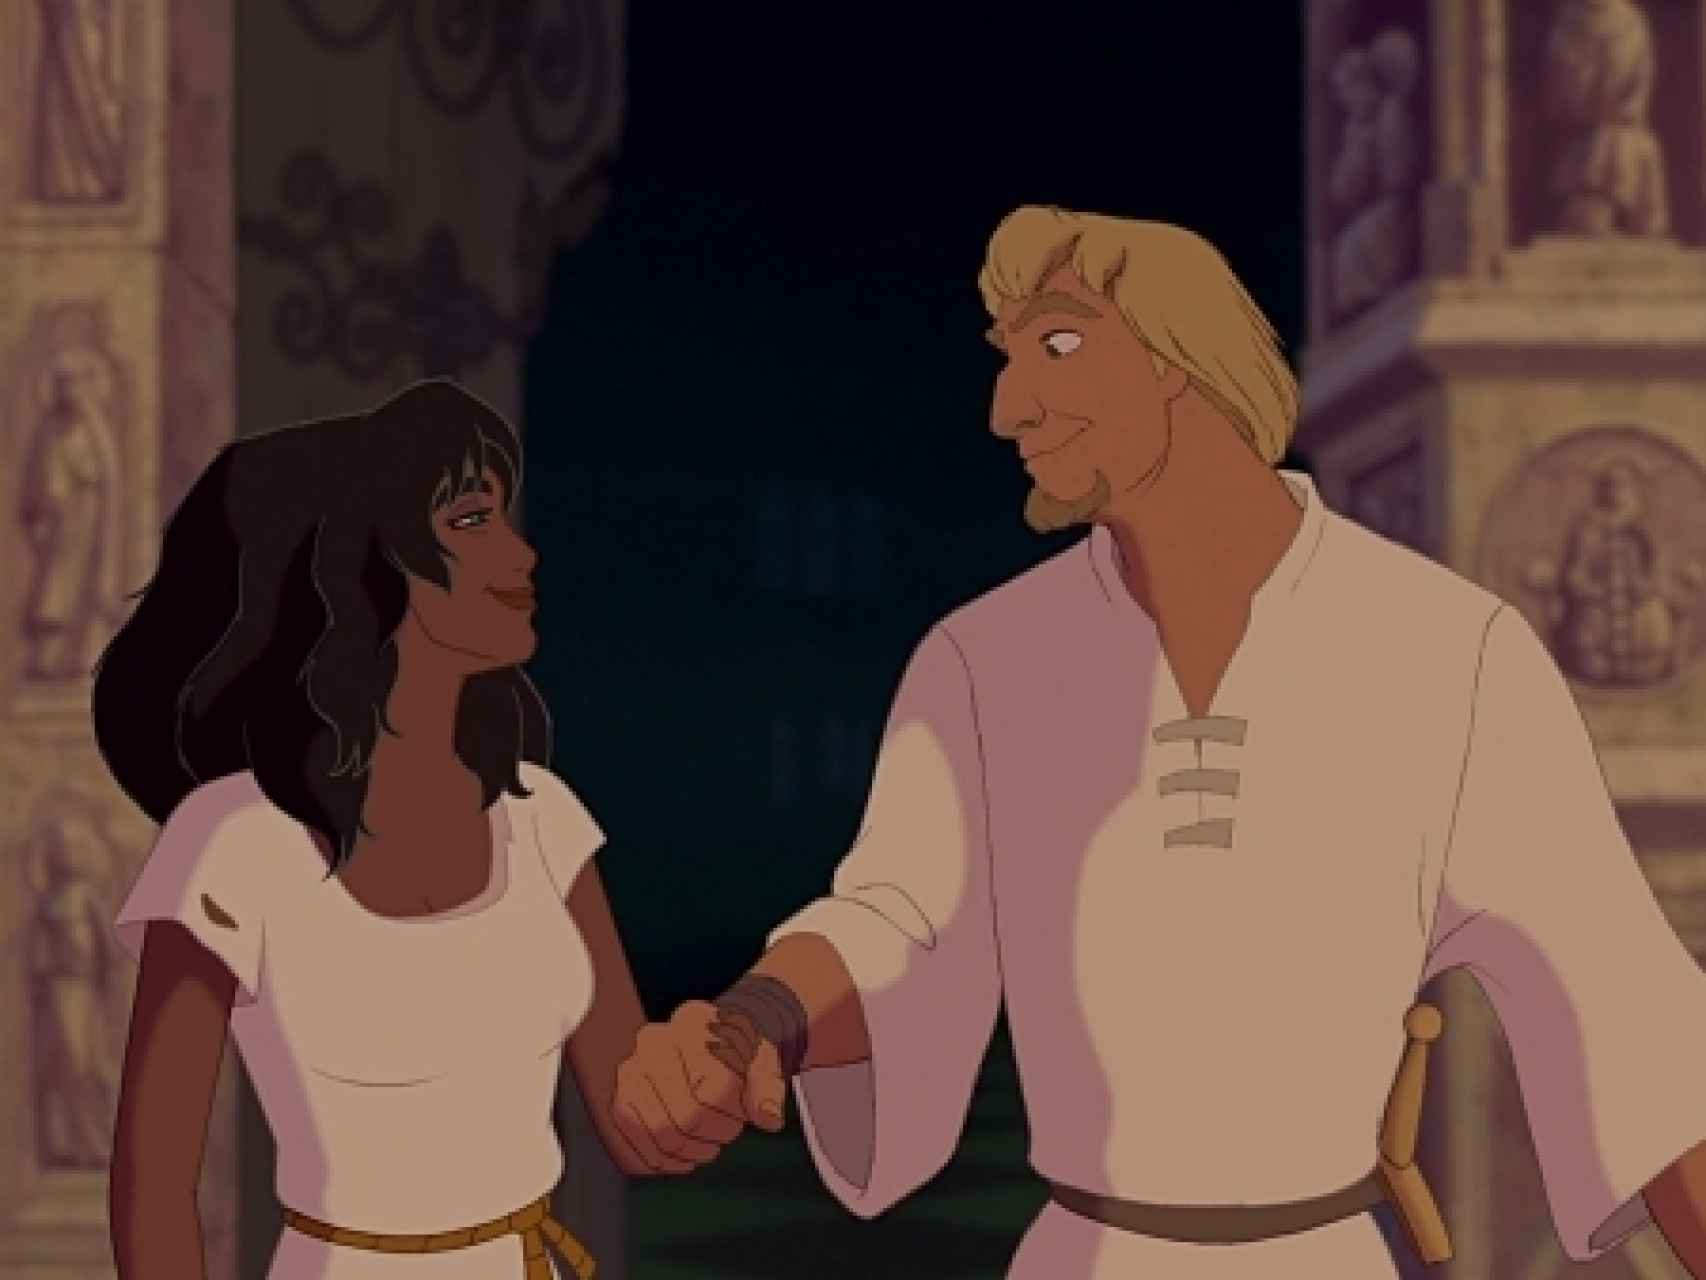 Febo jamás amó a Esmeralda, la utilizó. En la película acaban felices y juntos.